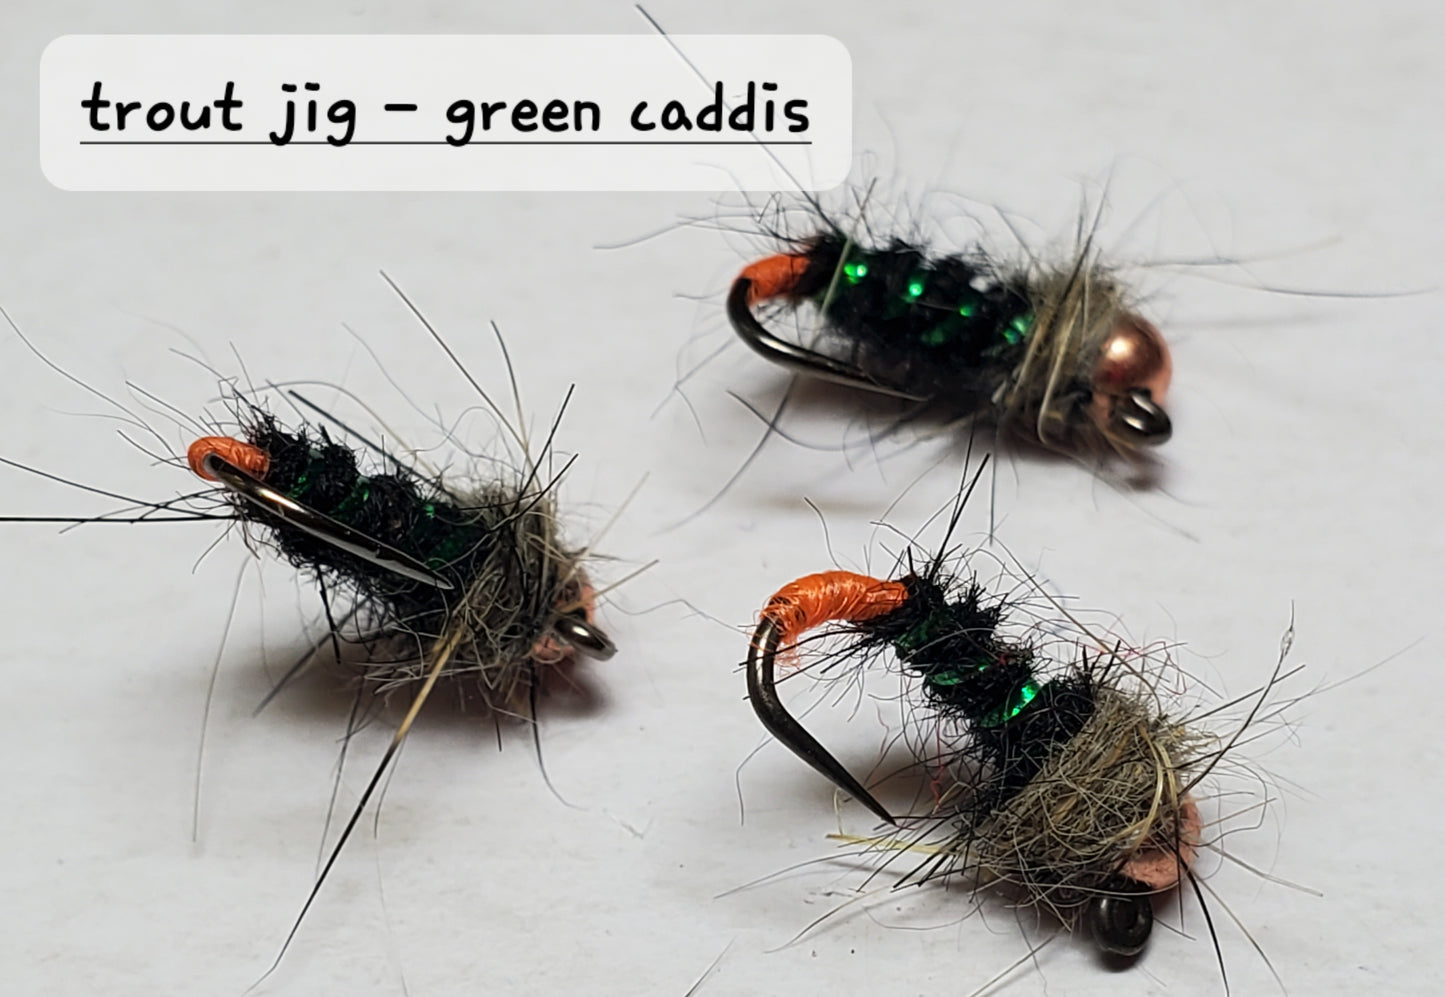 Trout Jig -Green Caddis, Tungsten Bead Head Trout Jig, Trout Jig Nymph, Bead Head Nymph,